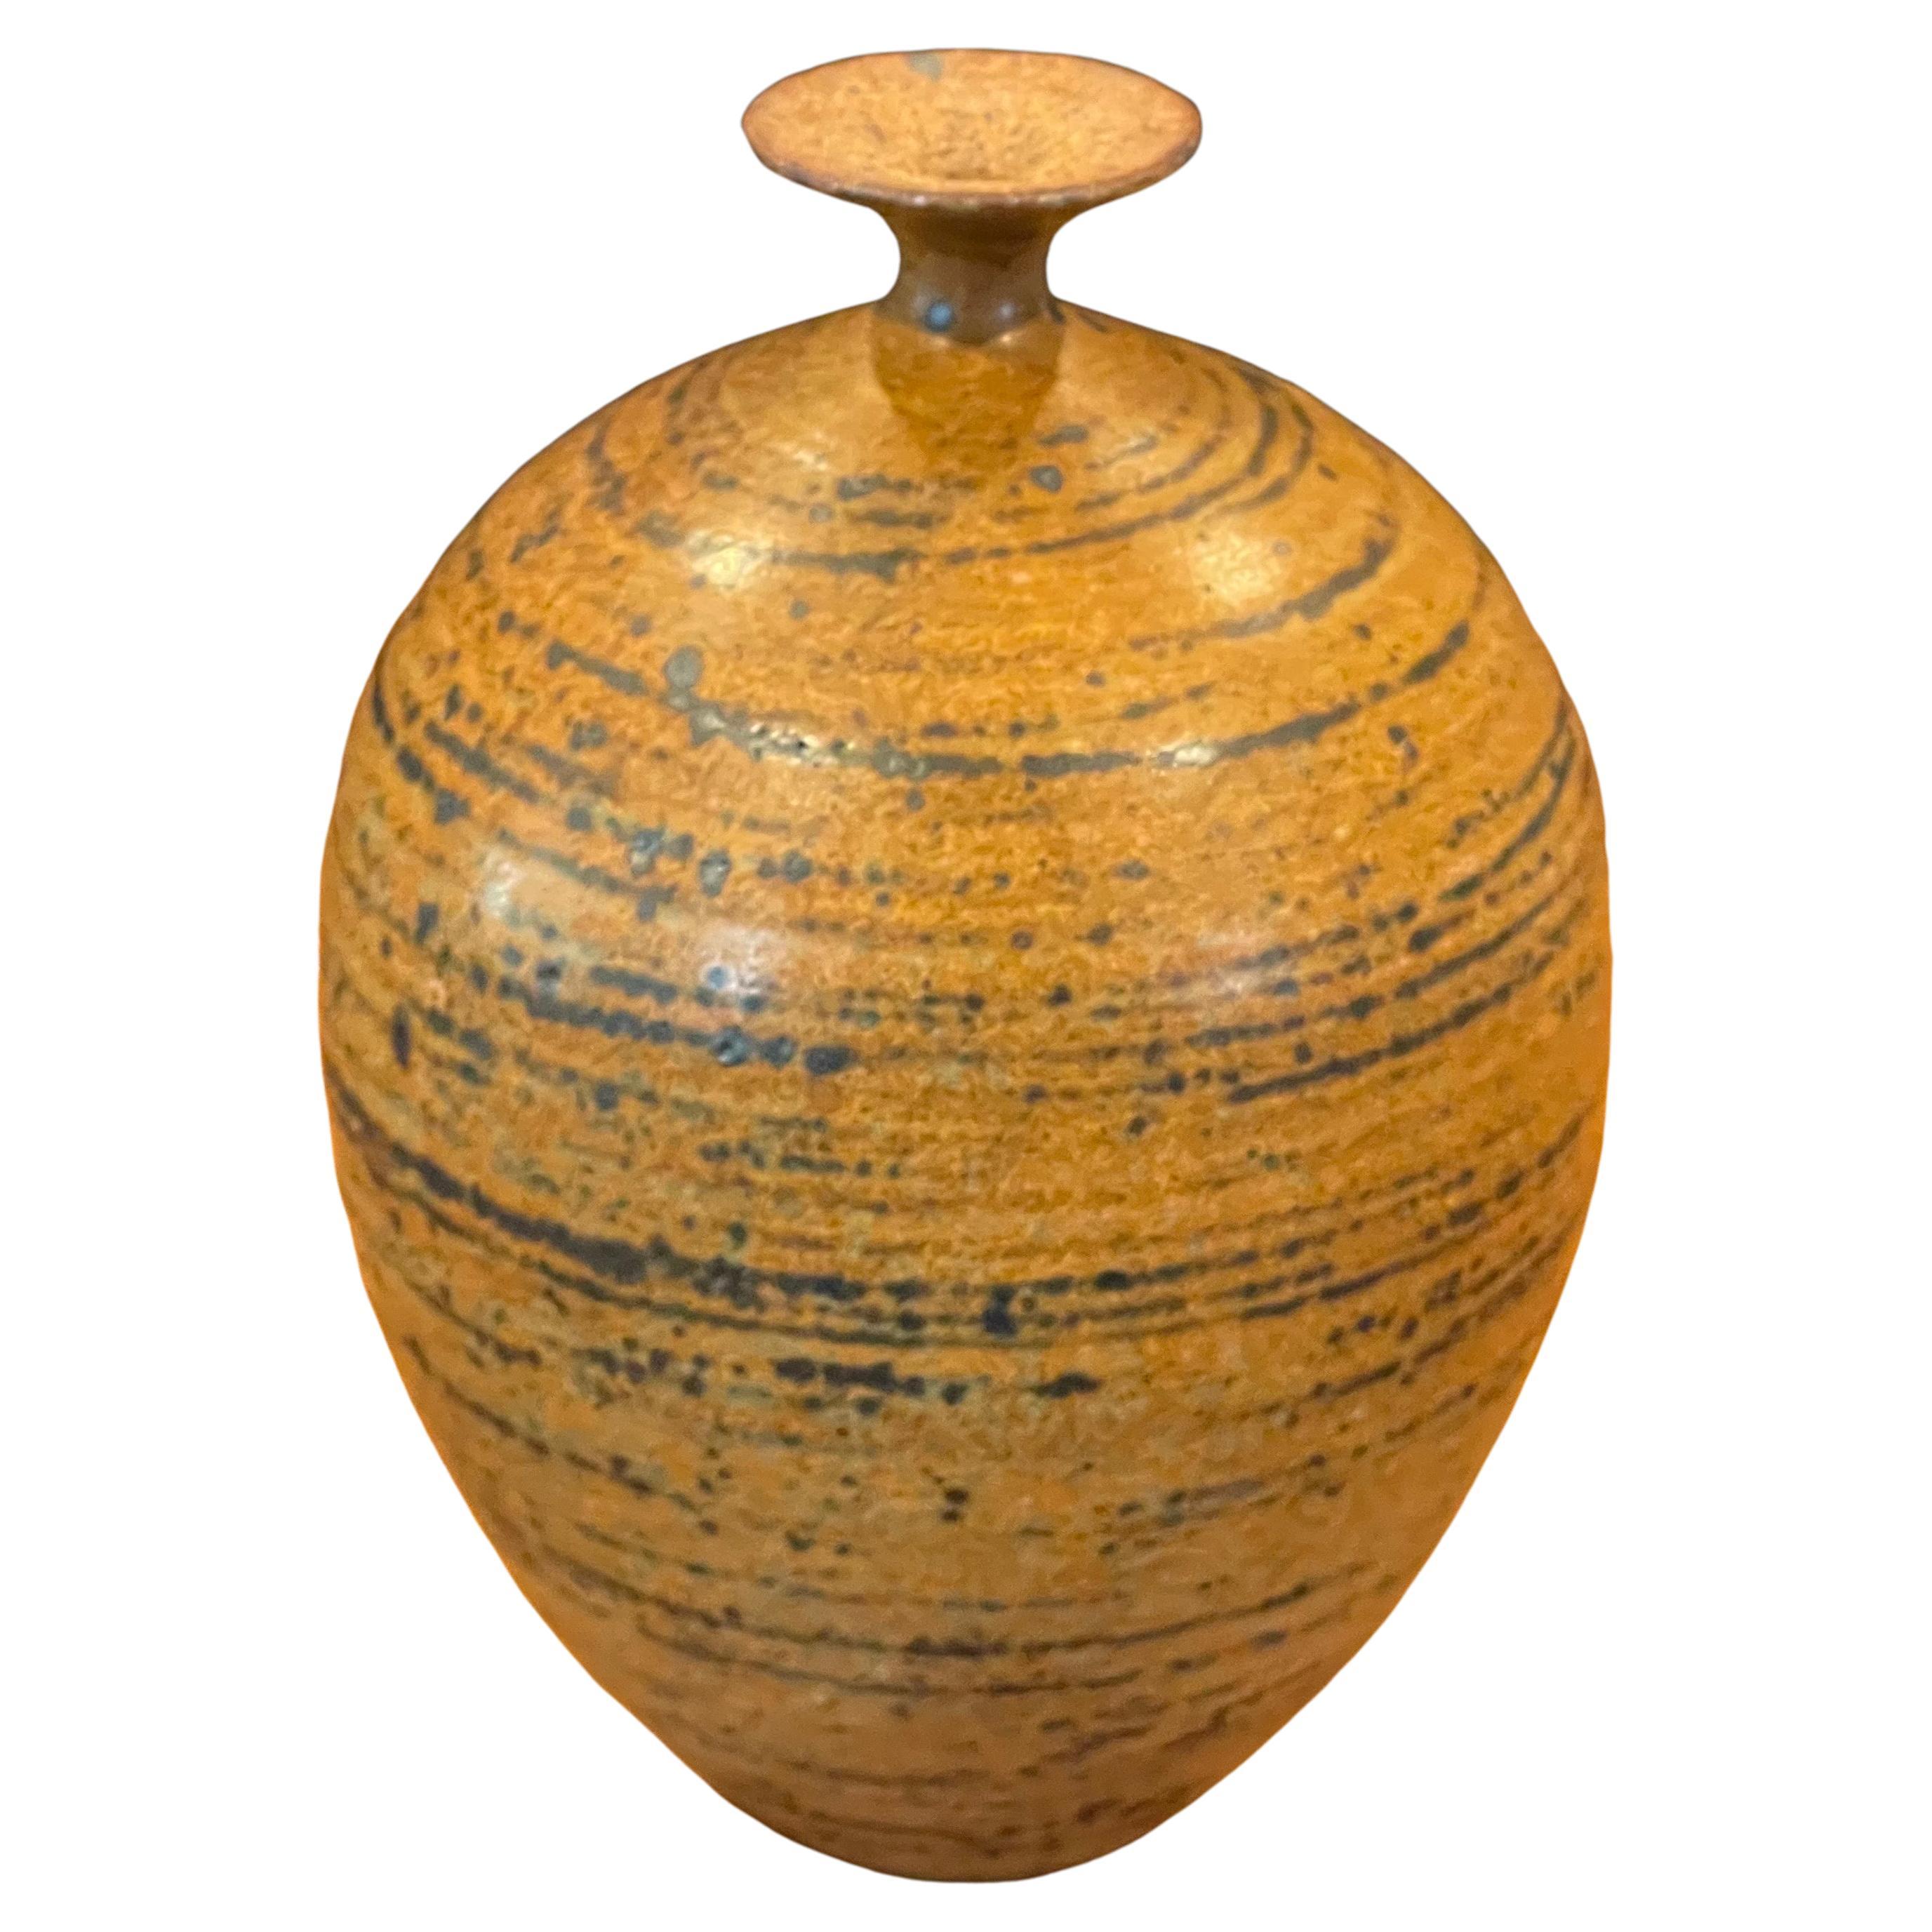 Eine absolut atemberaubende Kalifornien Design Steinzeug Unkraut Topf / Vase von bekannten San Diego, CA Töpfer Wayne Chapman, ca. 1970. Der Topf ist in sehr gutem Vintage-Zustand und misst 4,5 